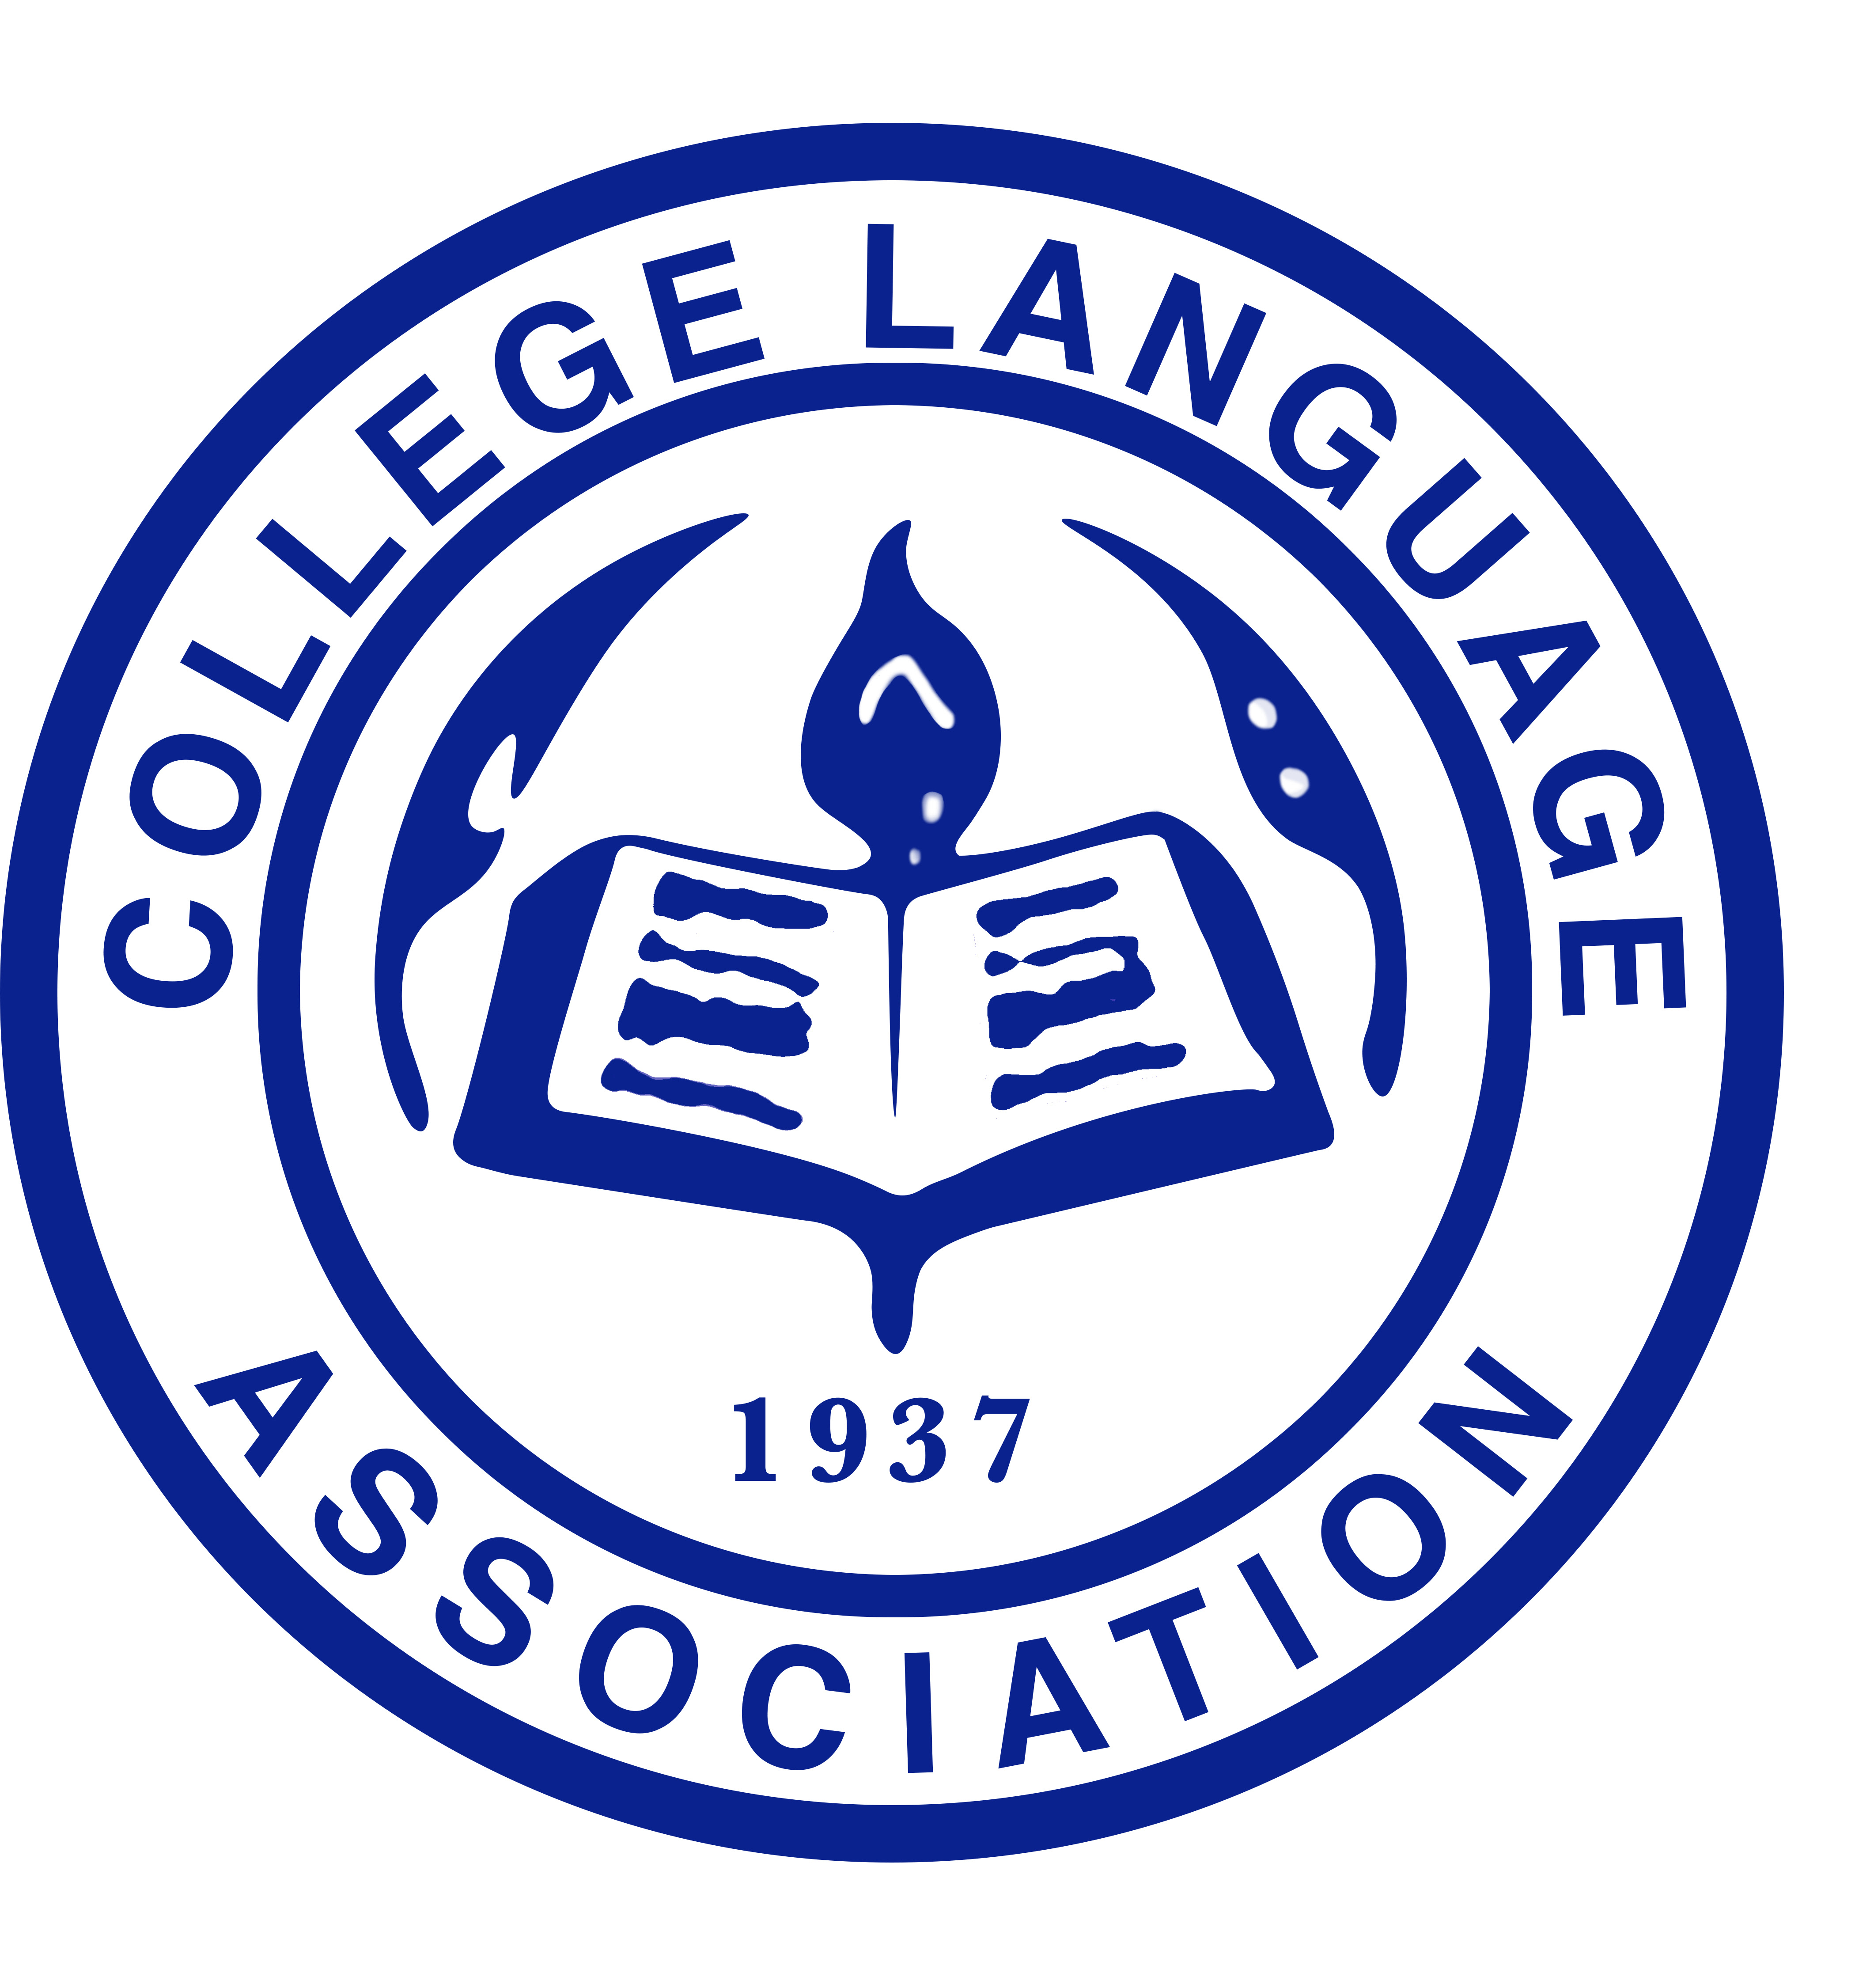 CLA Logo